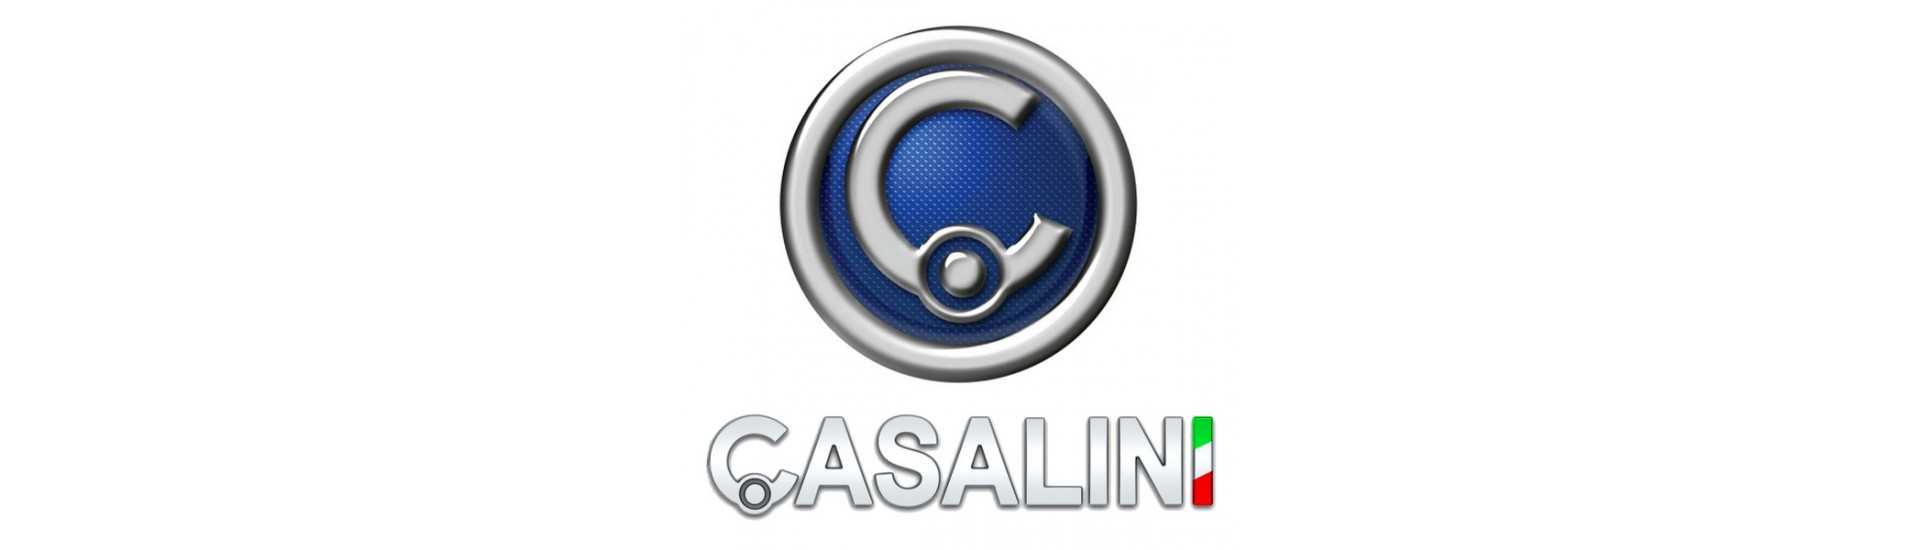 Rolo de suspensão no melhor carro preço sem uma permissão Casalini